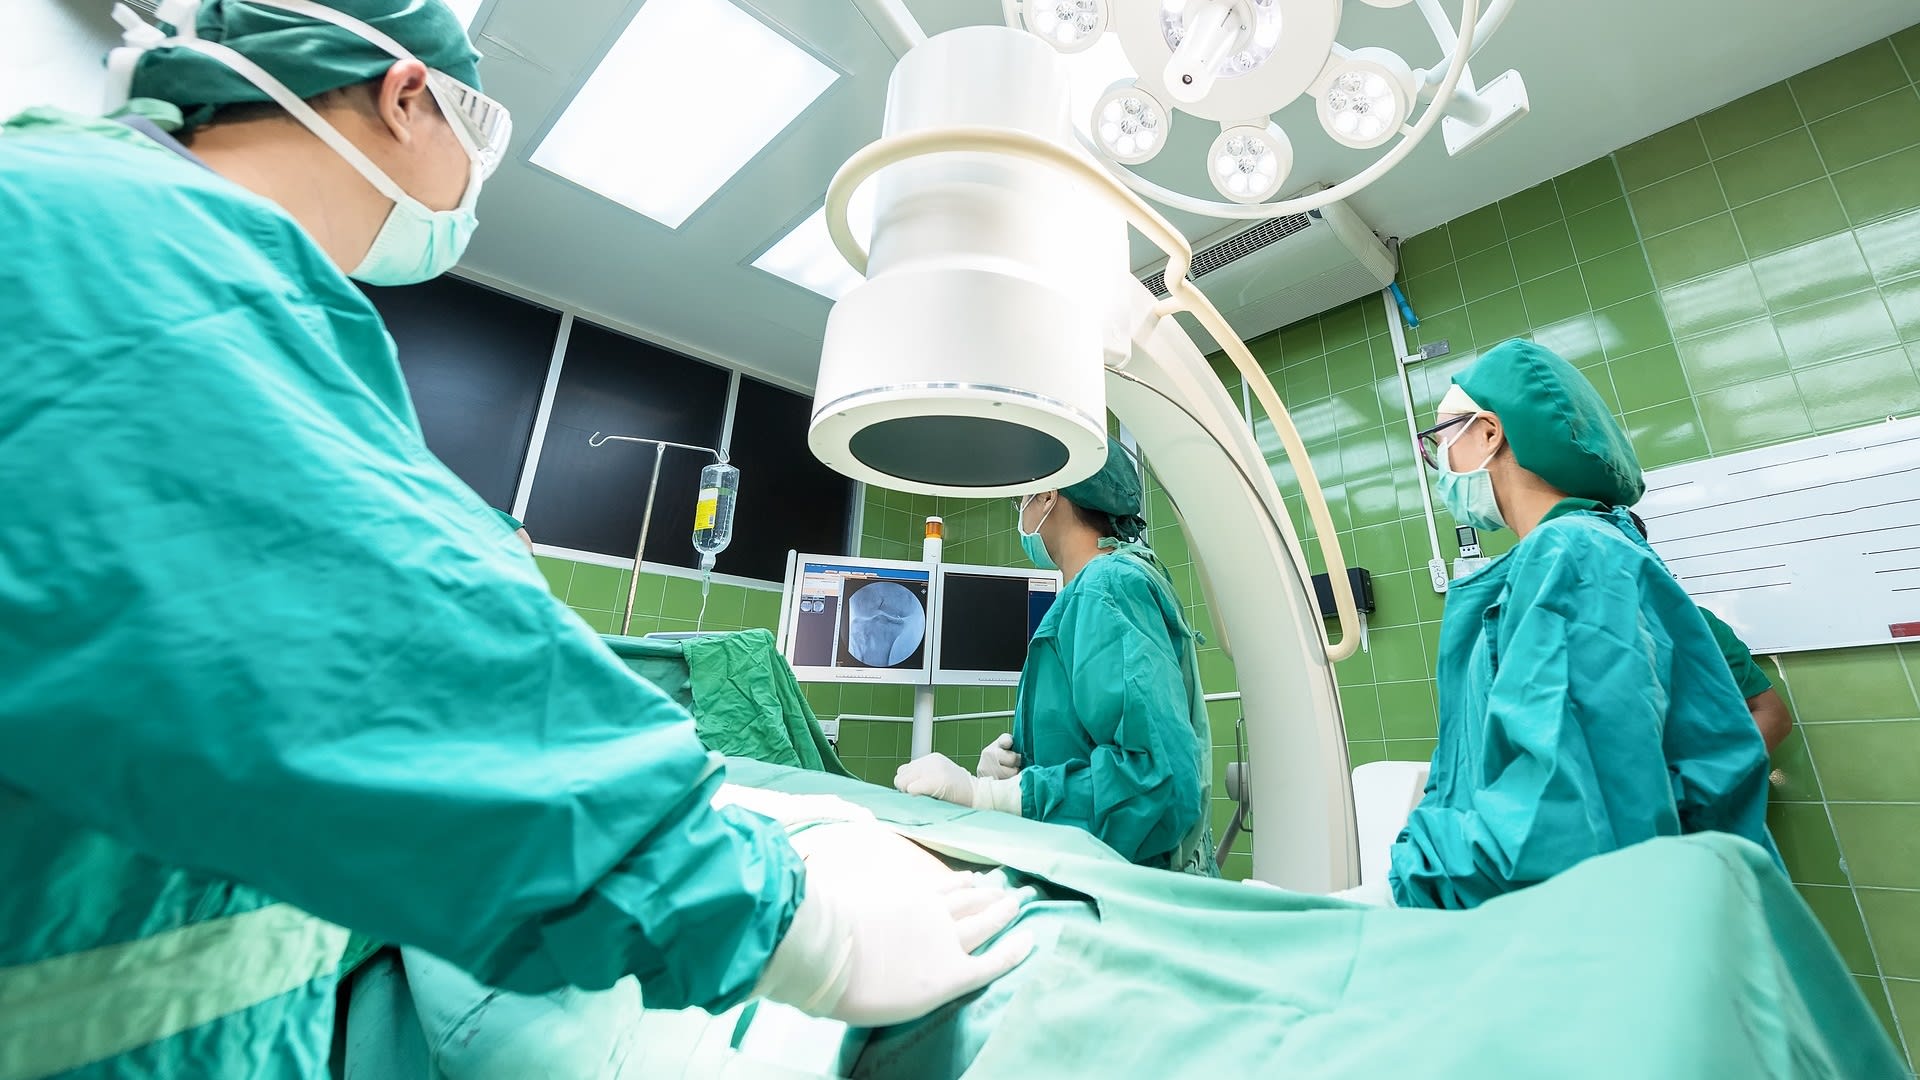 Je budoucnost chirurgie v operacích pomocí internetu?